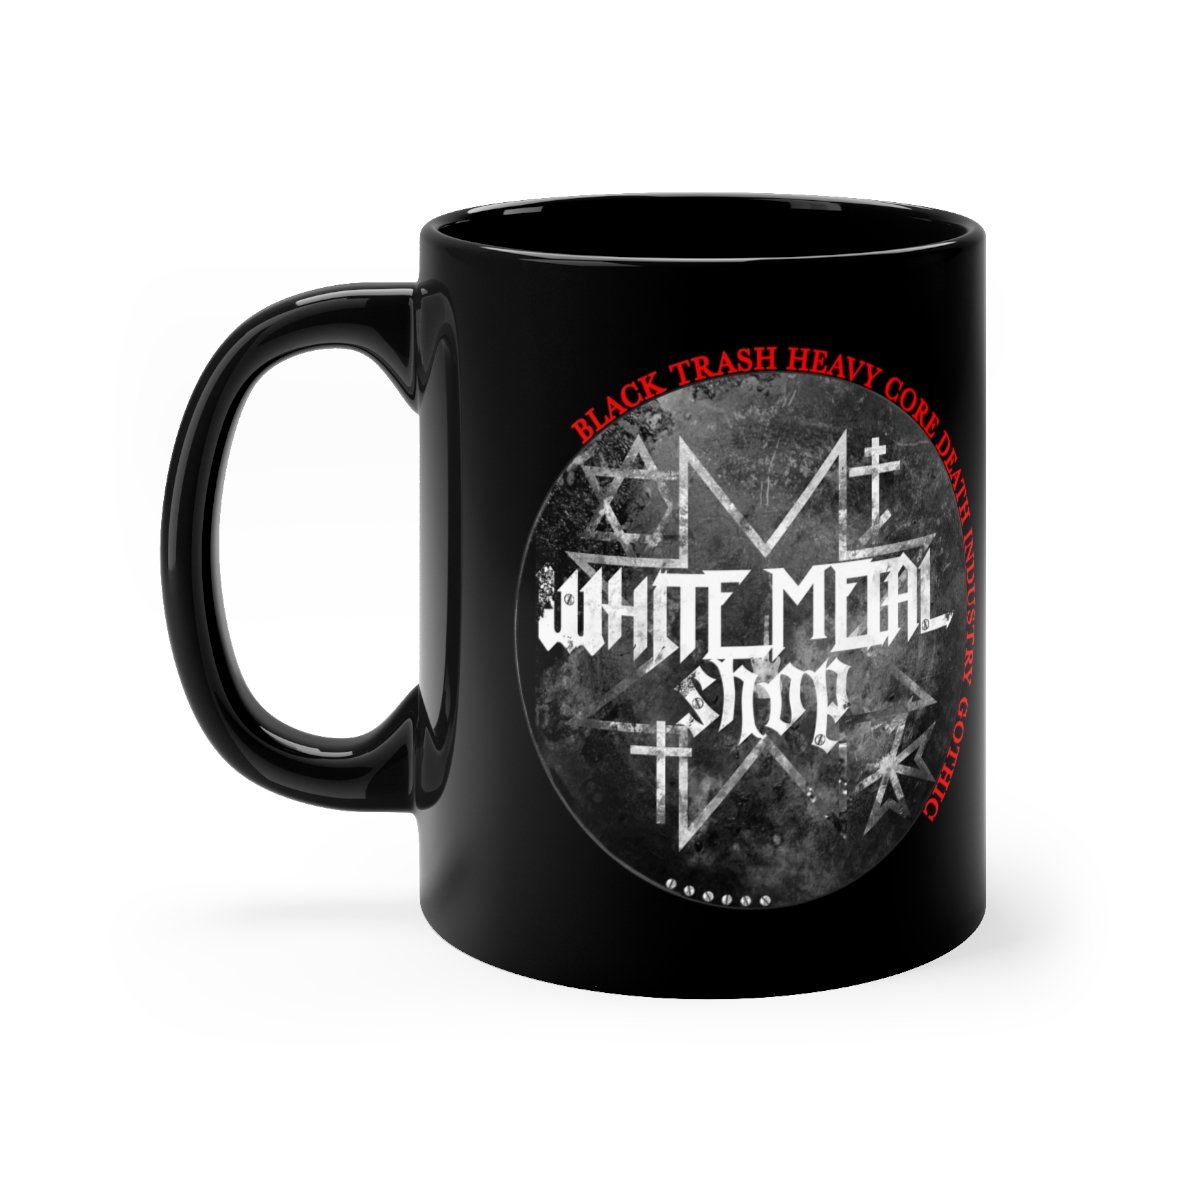 White Metal Shop Black mug 11oz